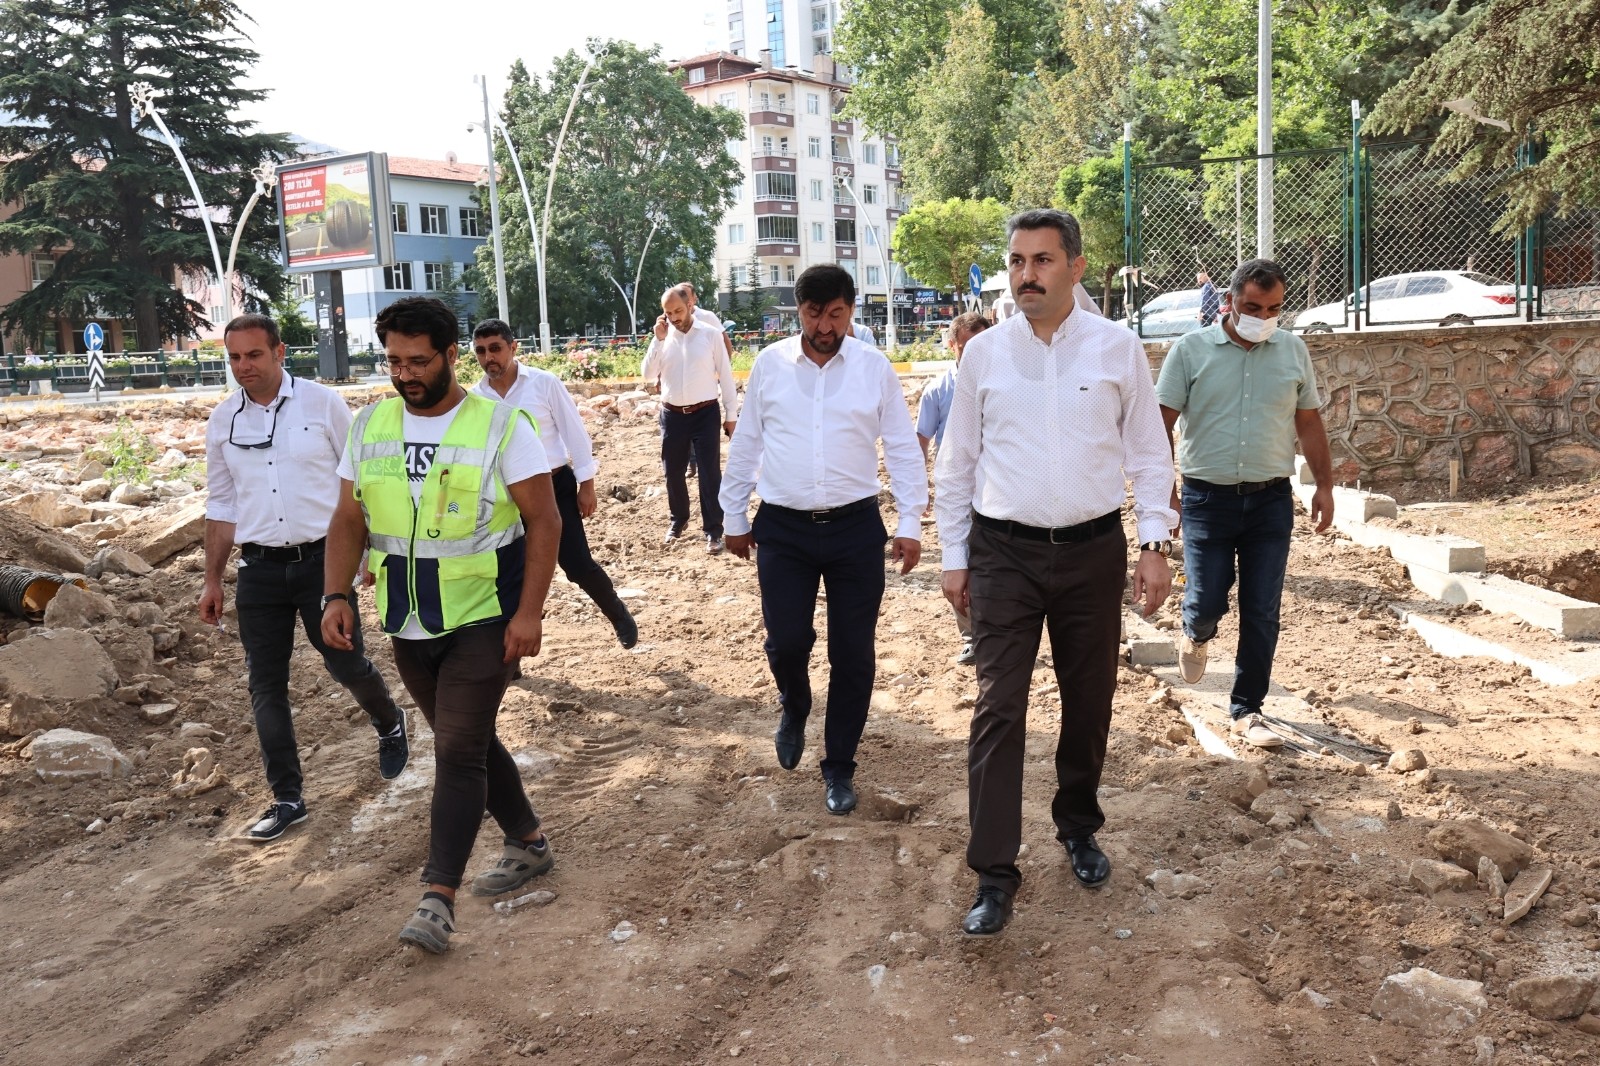 Başkan Eroğlu: “Şehrimiz için durmaksızın çalışıyoruz”